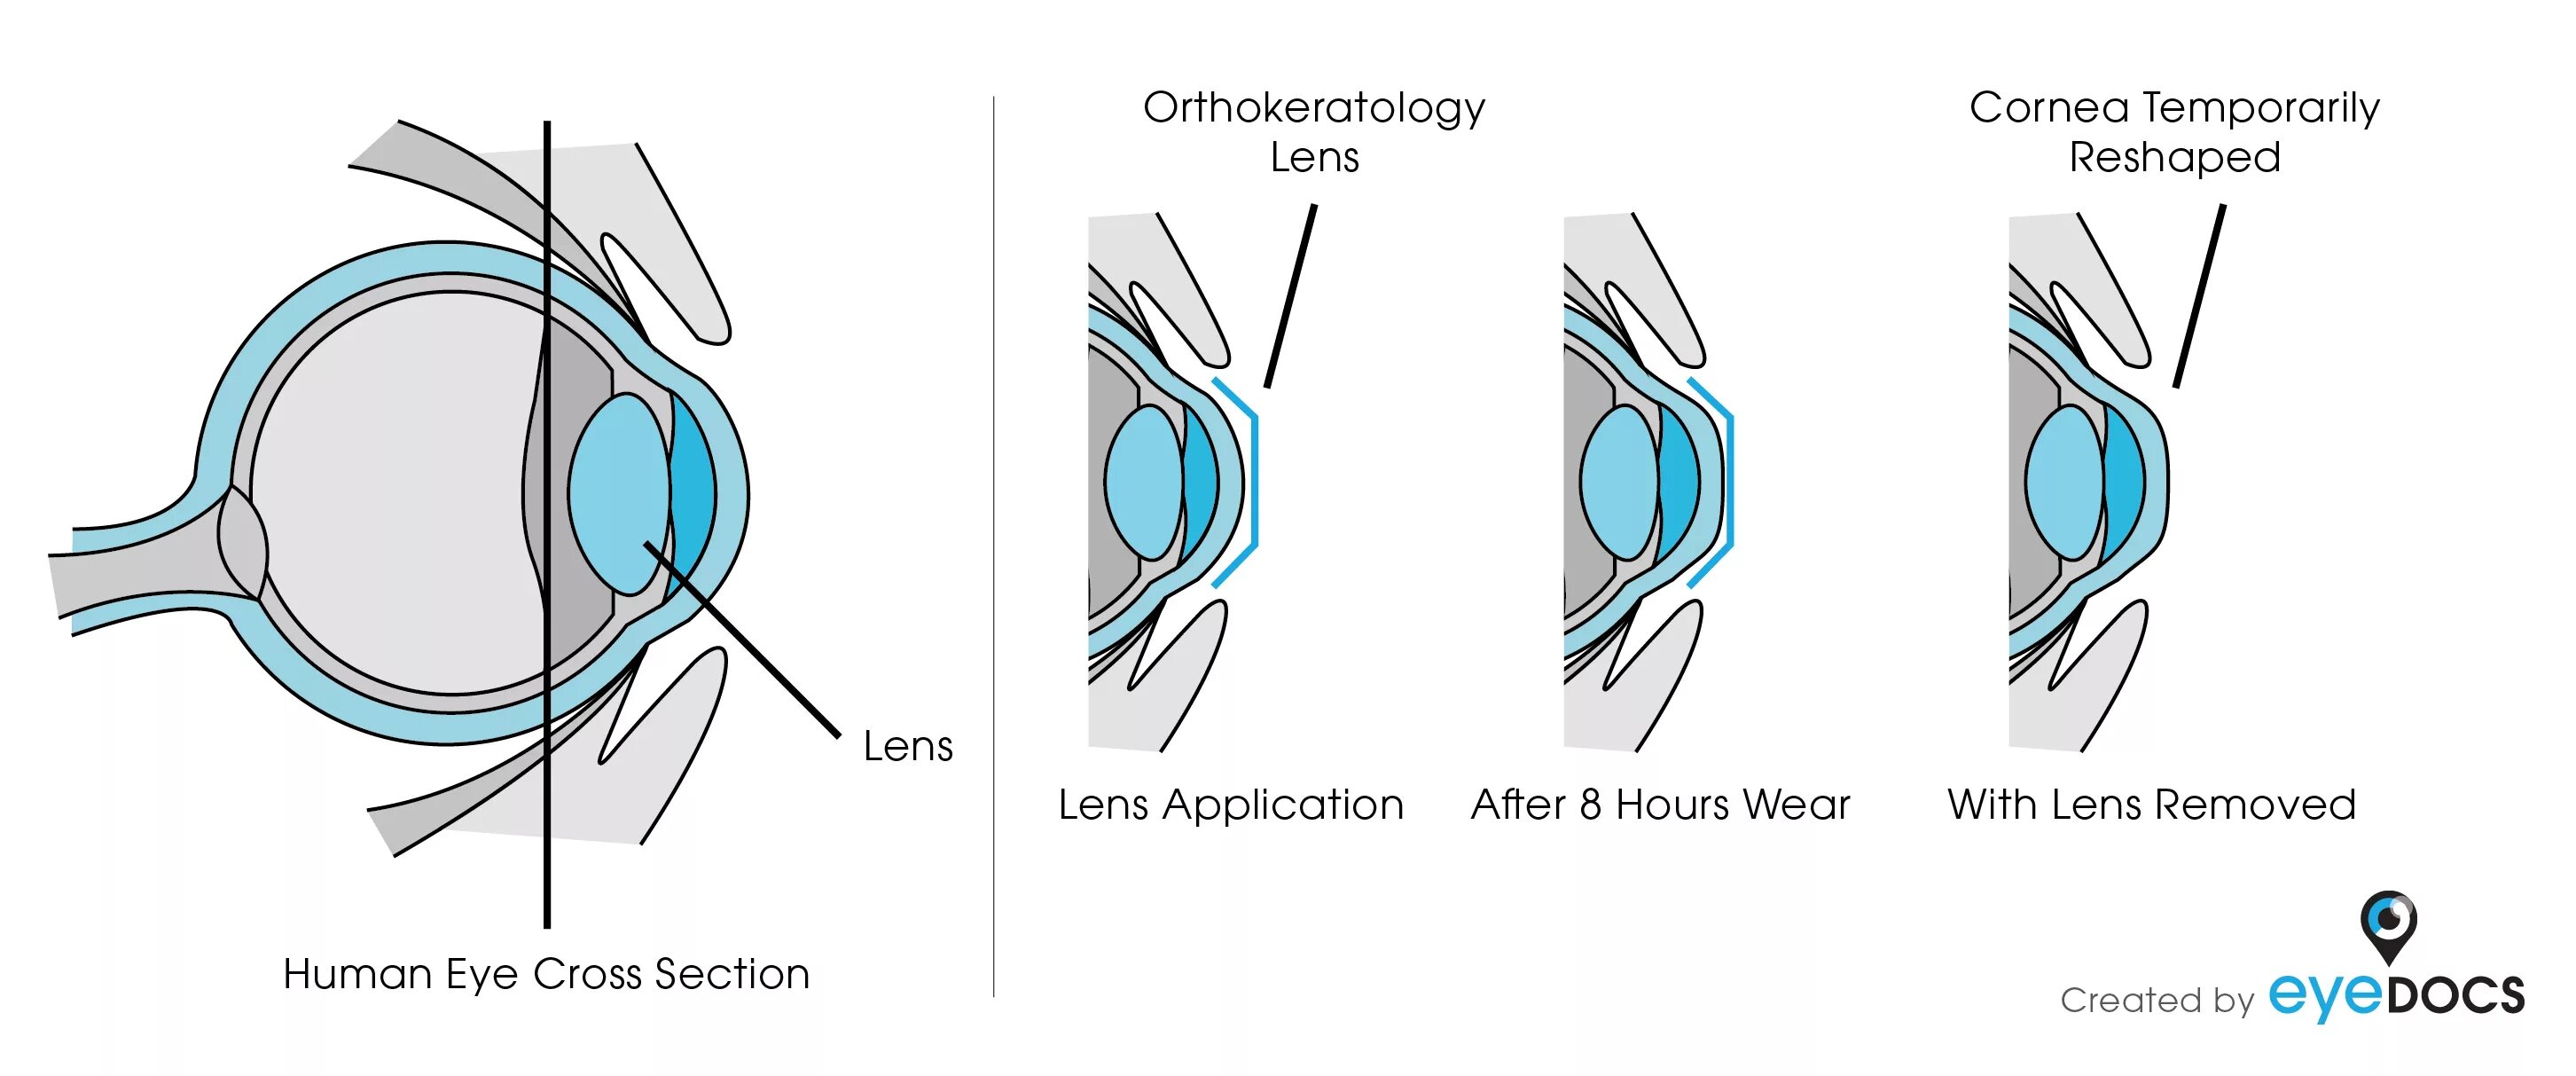 После лазерной коррекции зрения что нельзя делать. Жесткие ночные ортокератологические линзы. Ортокератология ночные линзы. Ночные жесткие линзы для восстановления зрения. Как работают ортокератологические линзы.